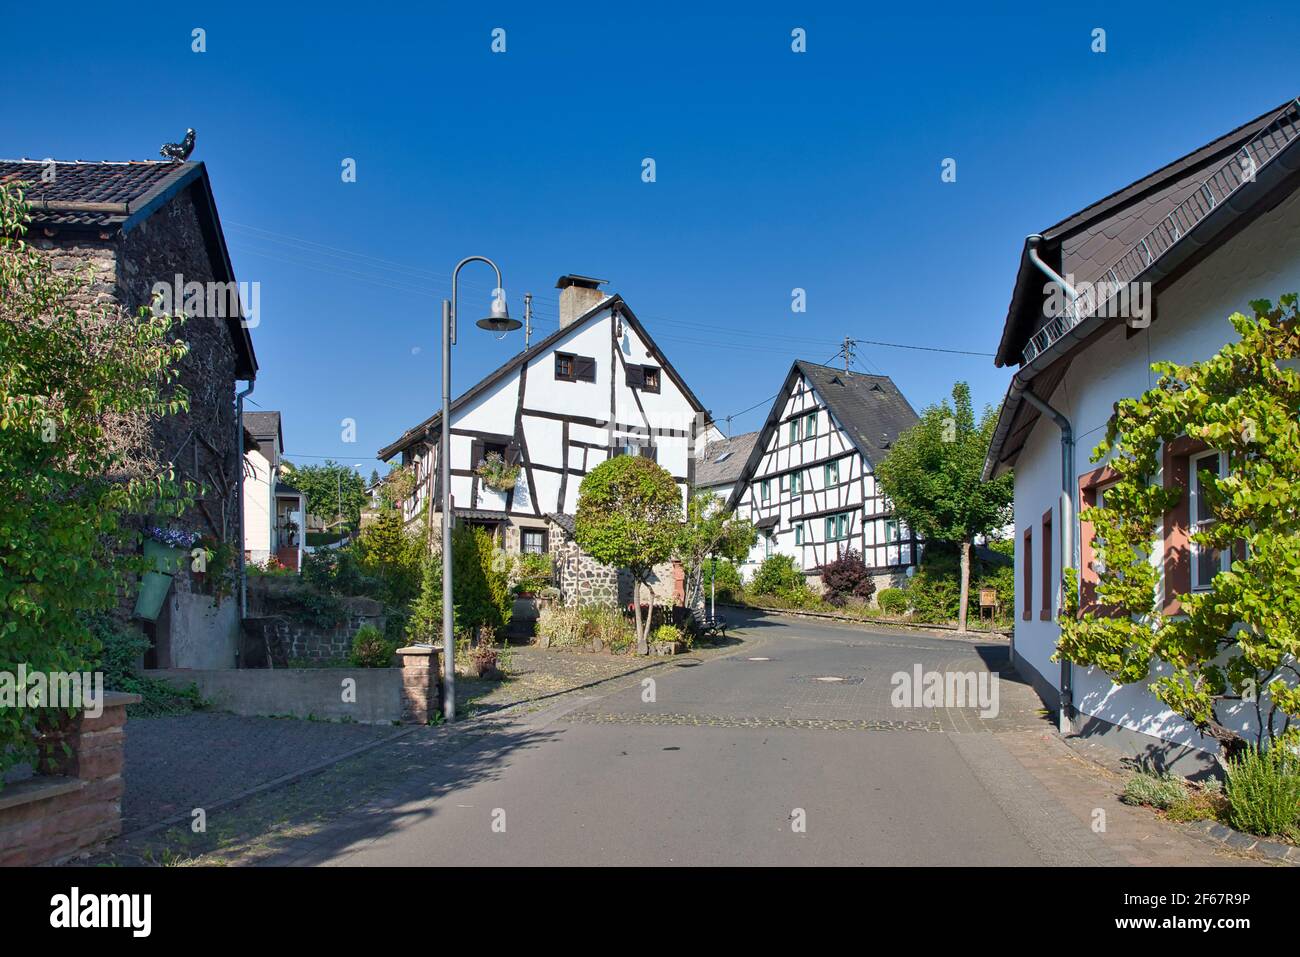 GERMANY, RHINELAND-PALATINATE, SCHALKENMEHREN - AUGUST 08, 2020: Half timbered houses in the village center of Schalkenmehren Stock Photo